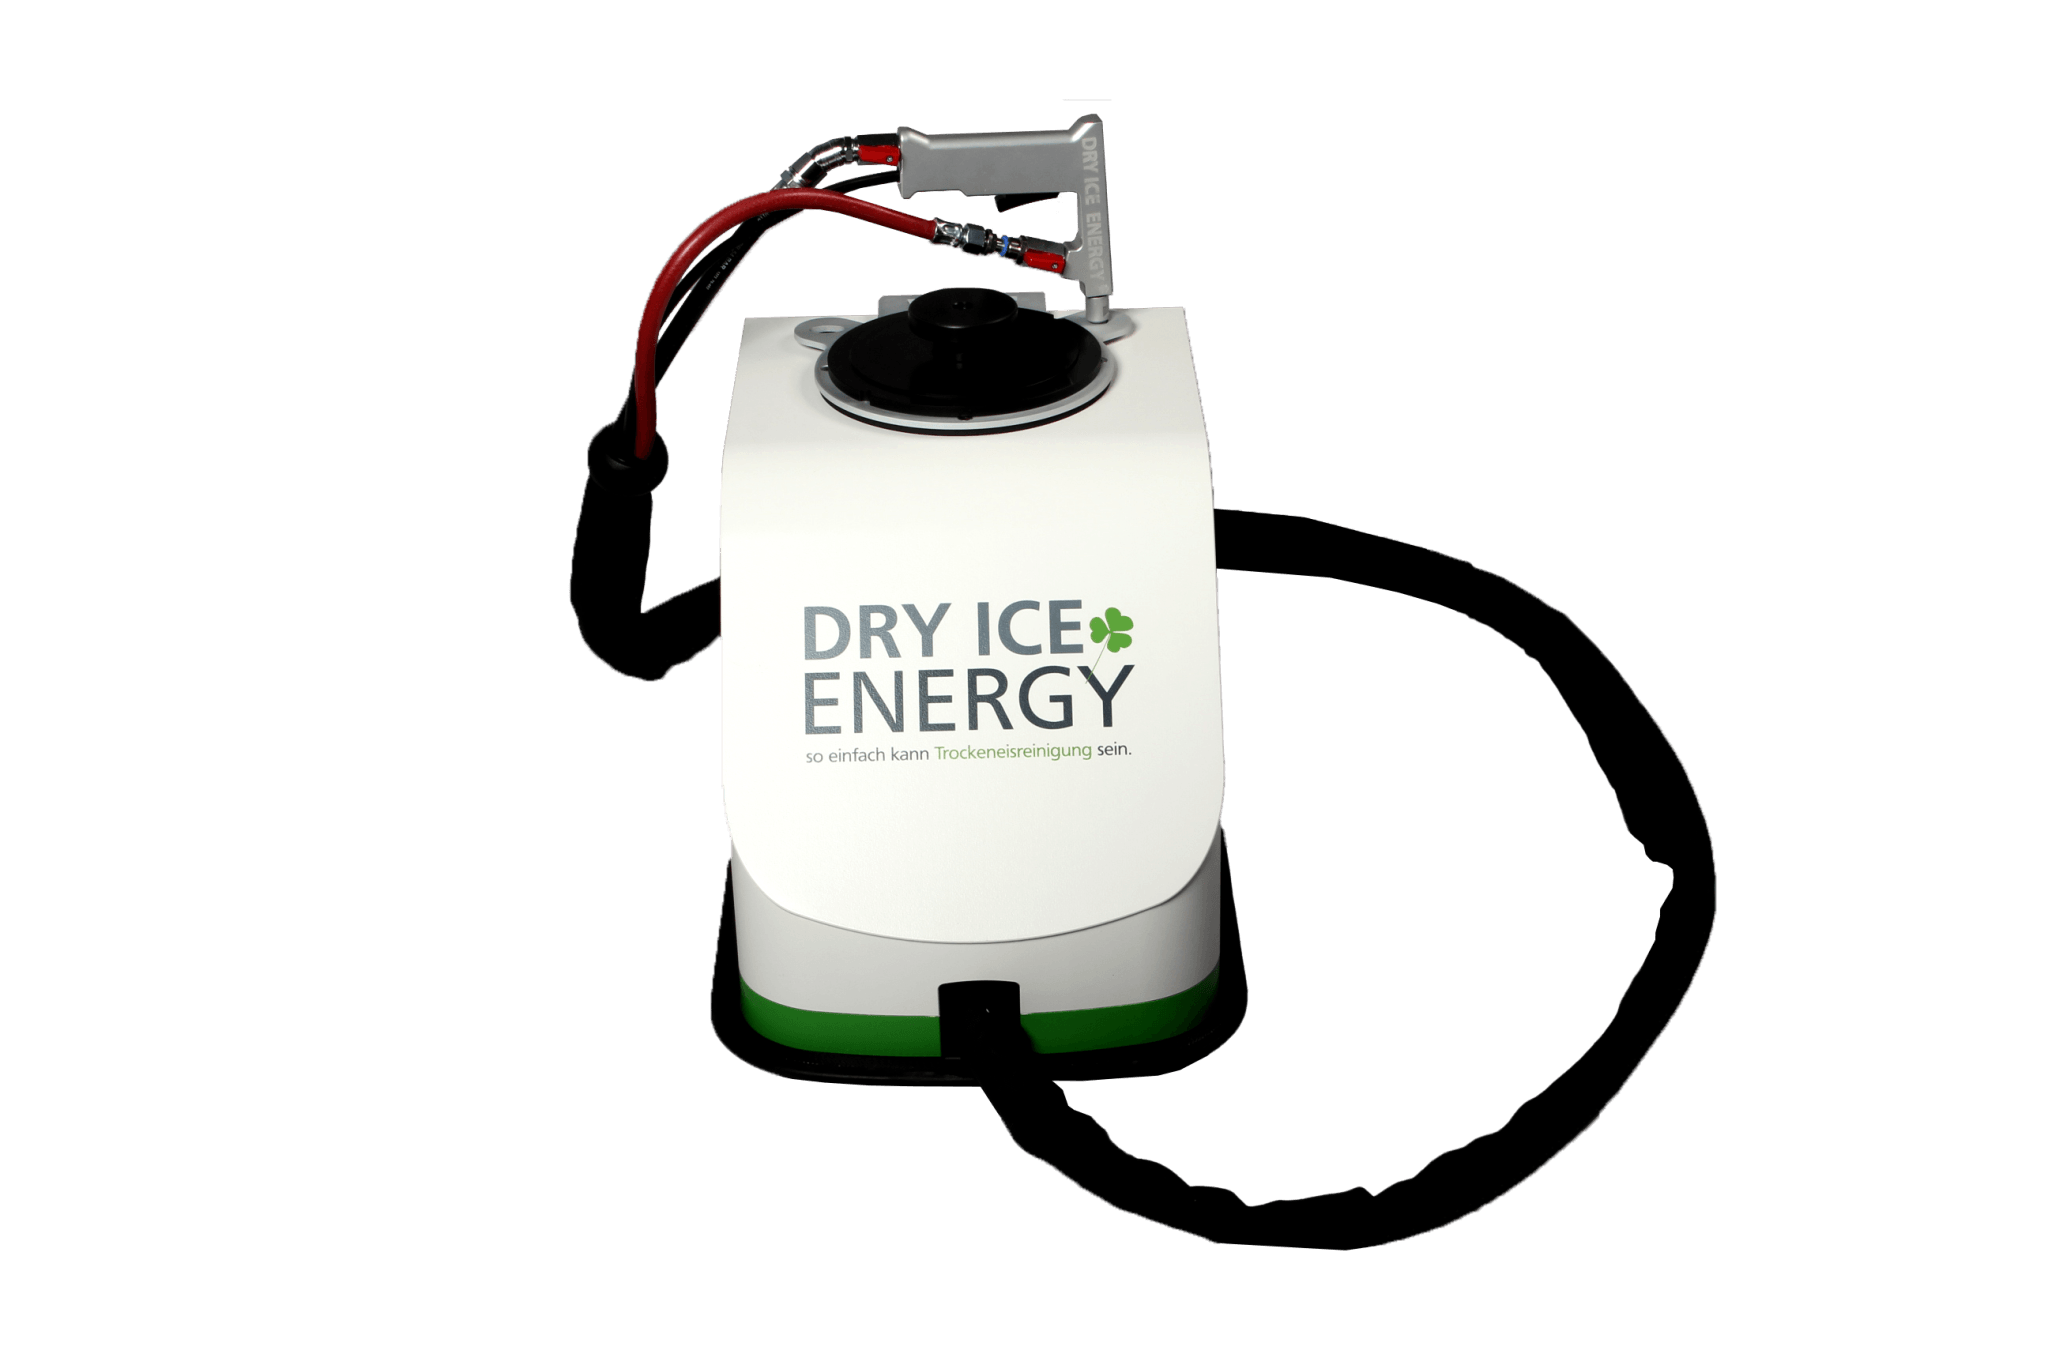 DRY ICE ENERGY | Champ - Dry Ice Blasting Machine